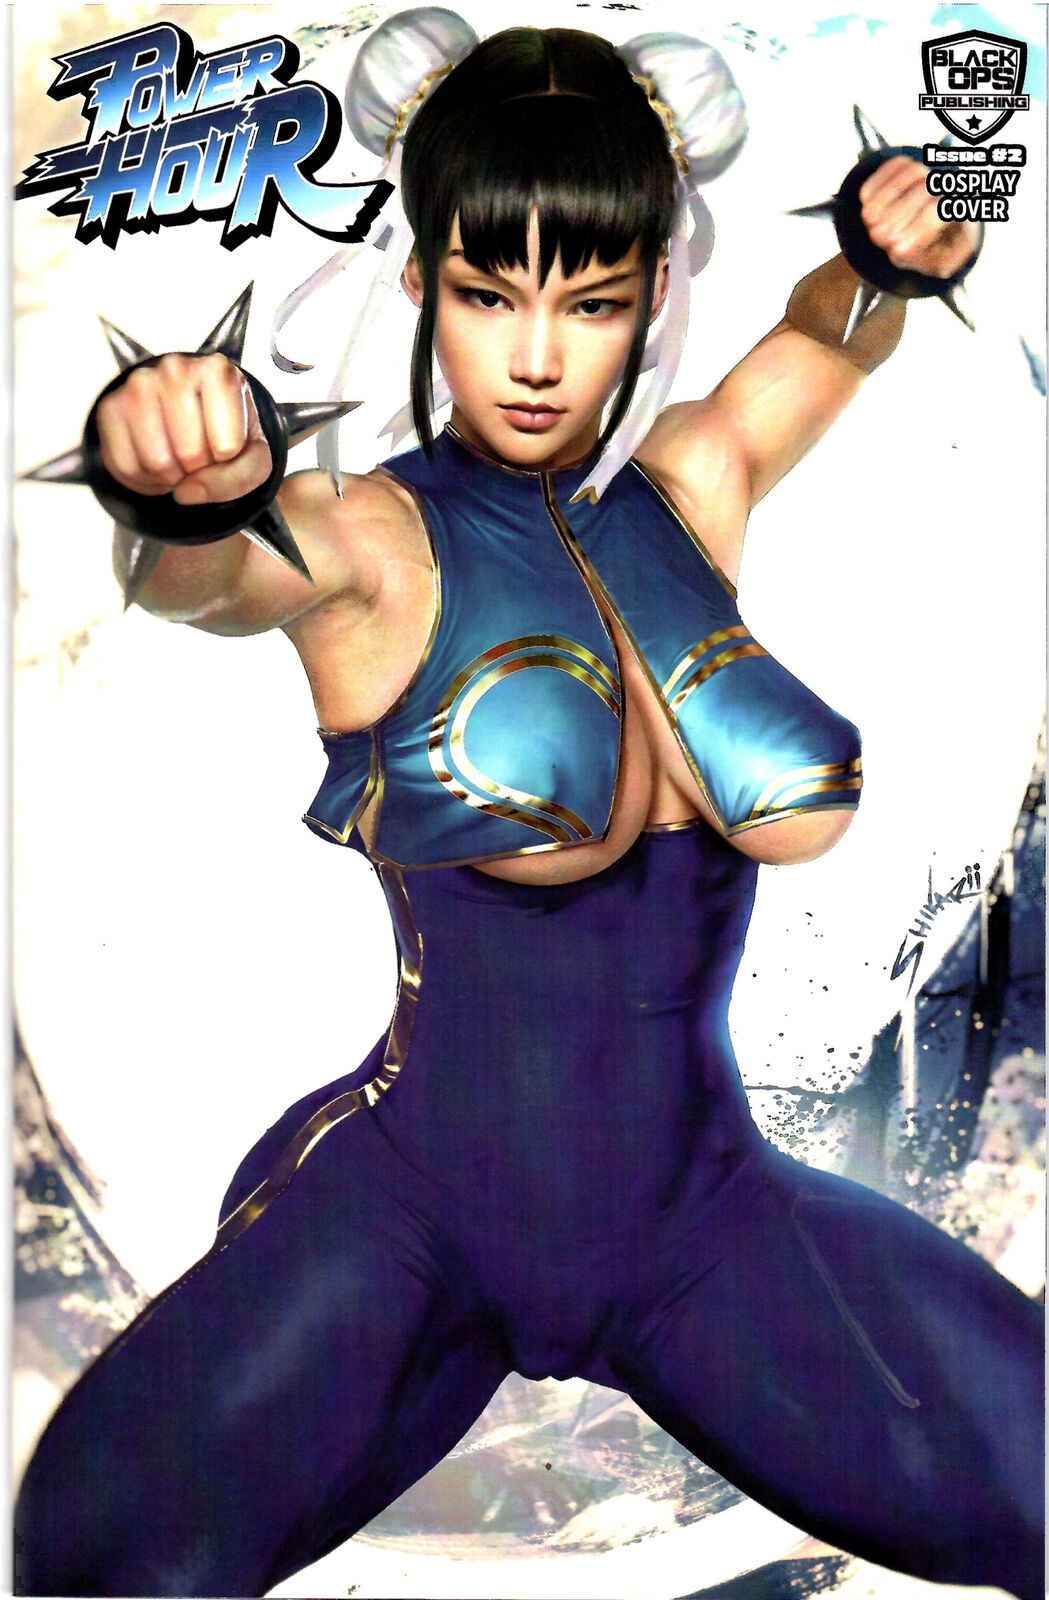 Power Hour #2 Cosplay Shikarii Fighter Girl Variant Ltd to 200 NM